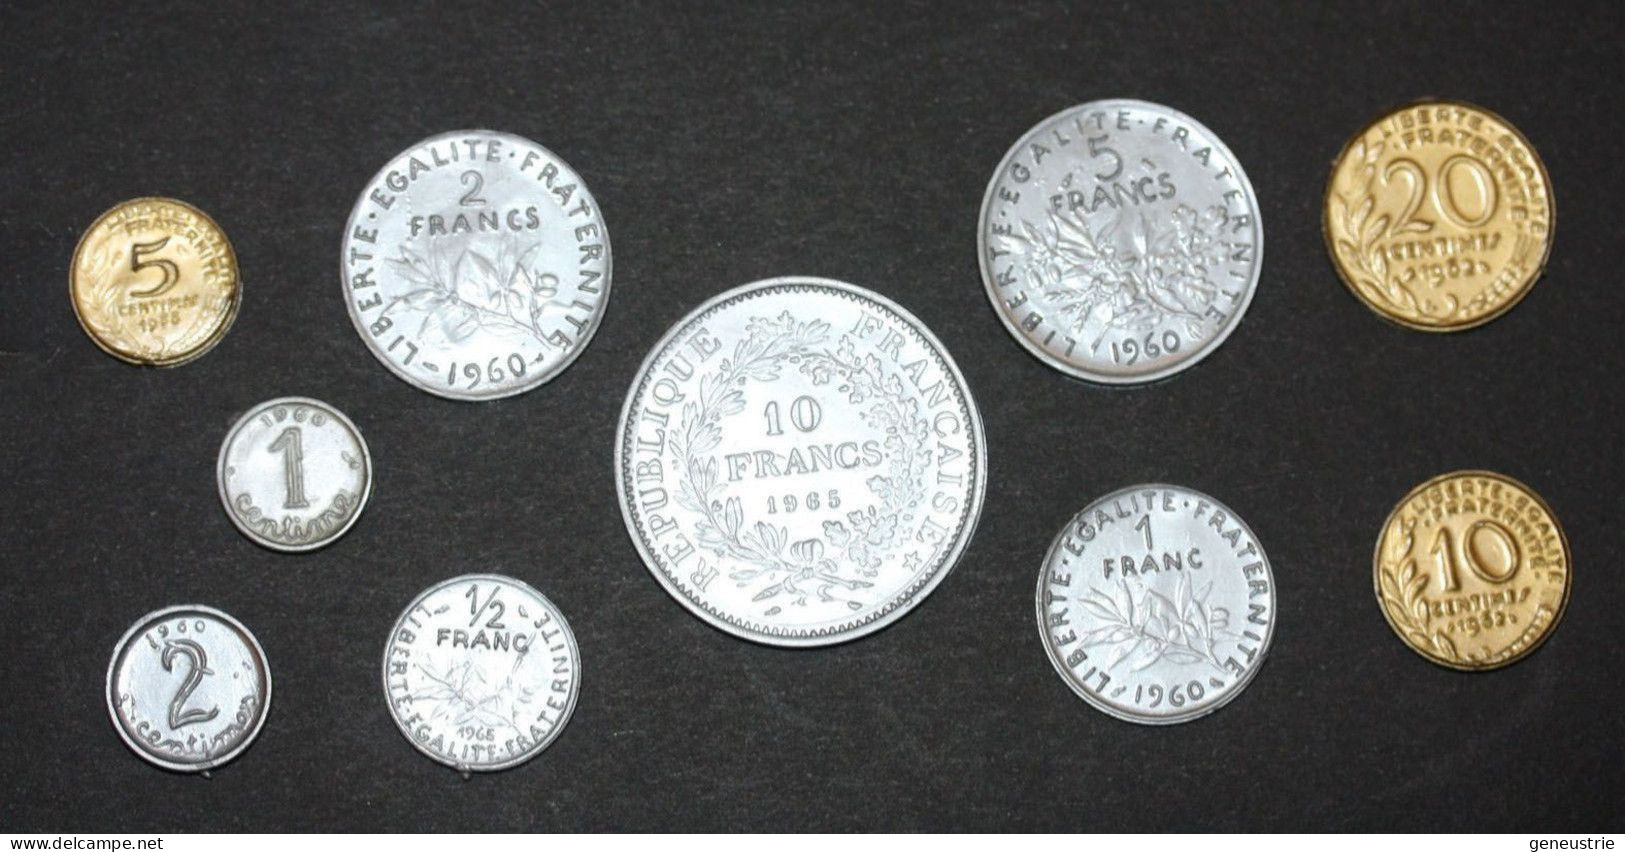 Série De 10 Monnaies Scolaire (1 Centime à 10 Francs) Jeton Plastique école En Francs - Années 60 - Coins School Token - Firma's